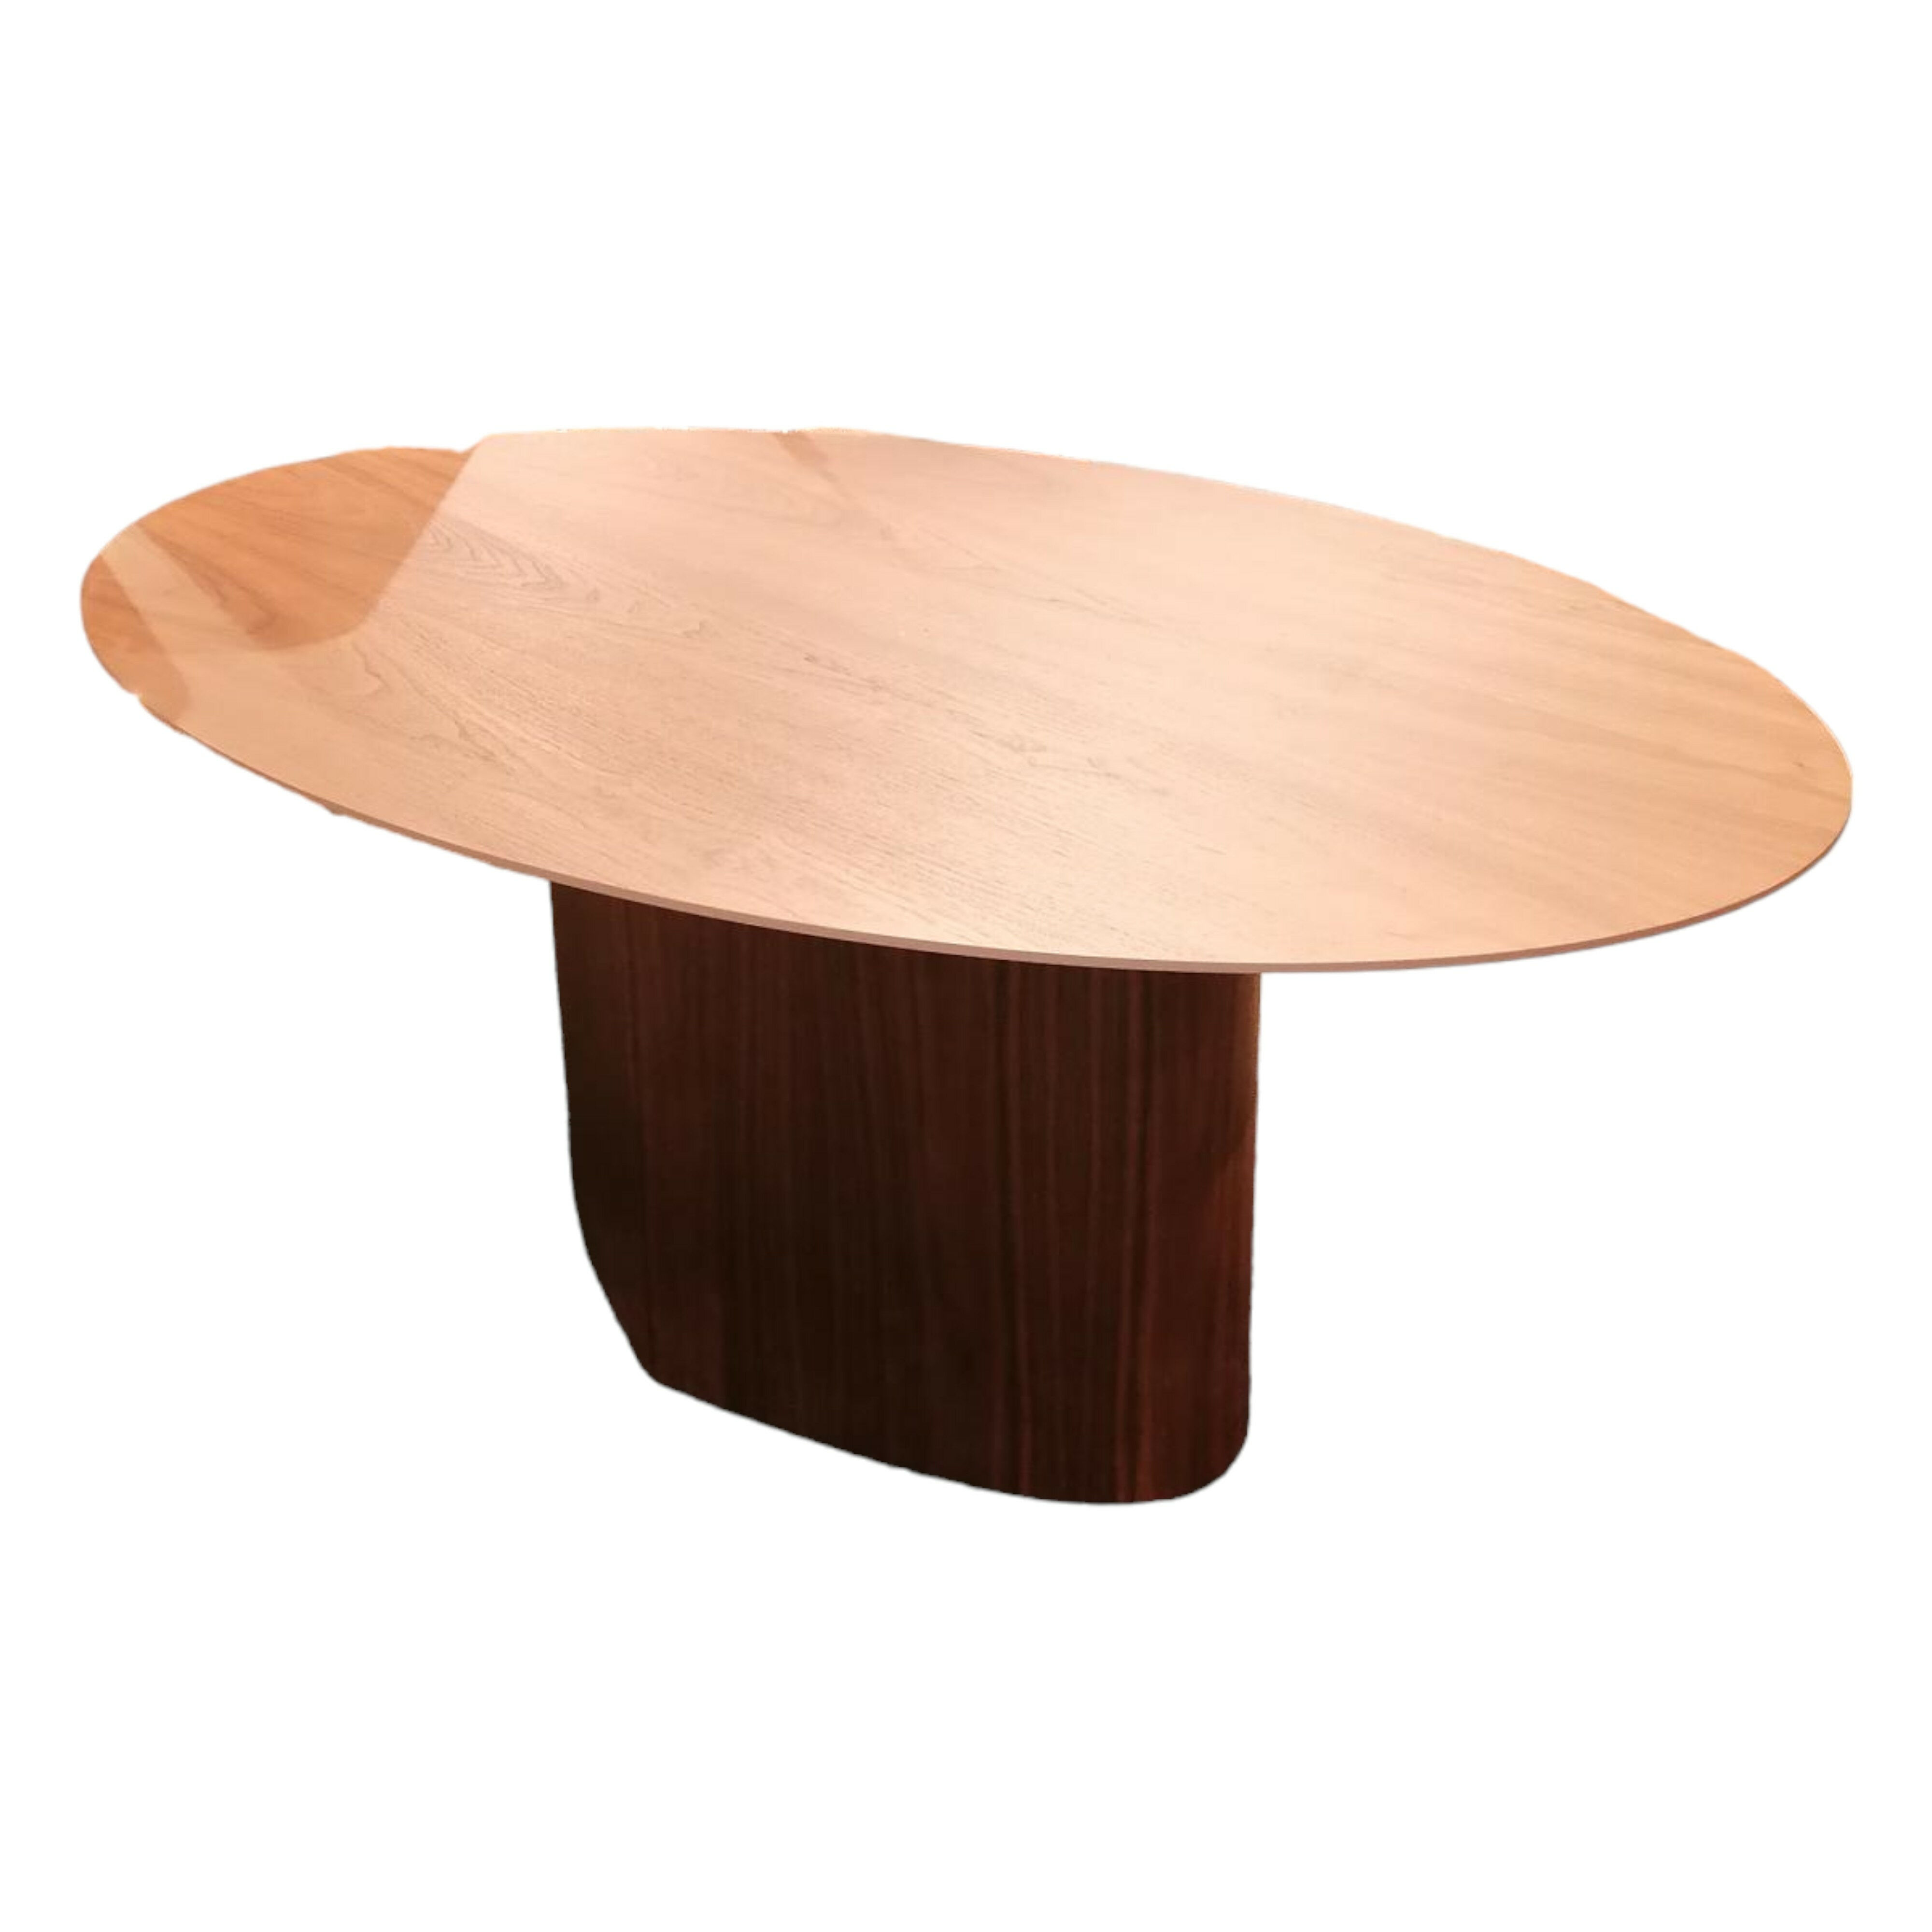 Esstisch Monoplauto Standard Platte Oval Holz Canaletto Walnuss Runder Tischfuß